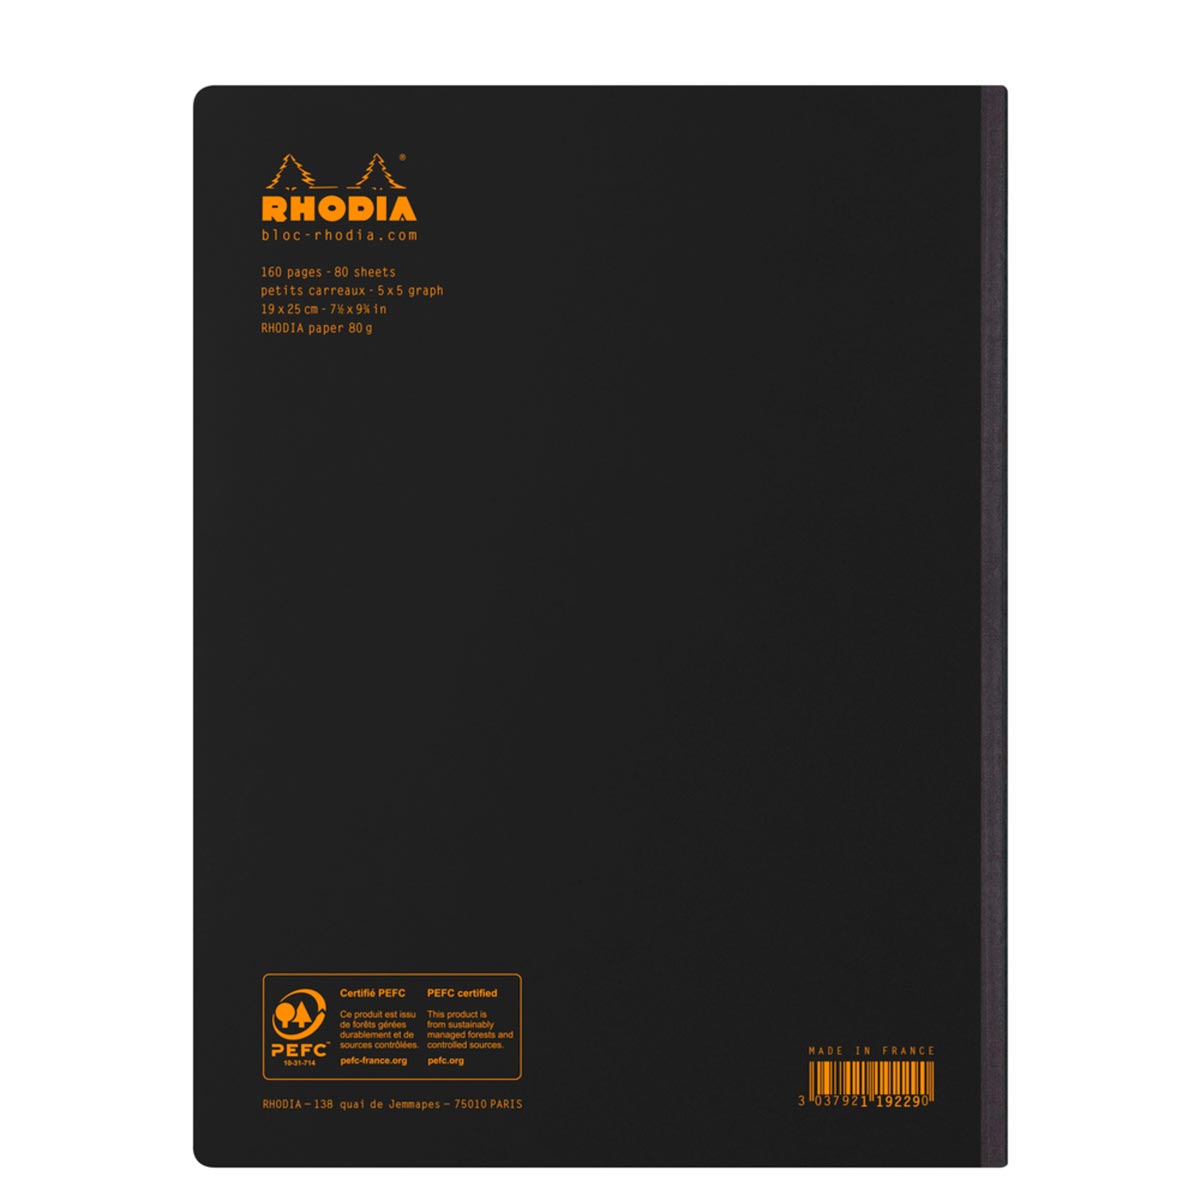 Rhodia - Composition Book B5 kariert, schwarz